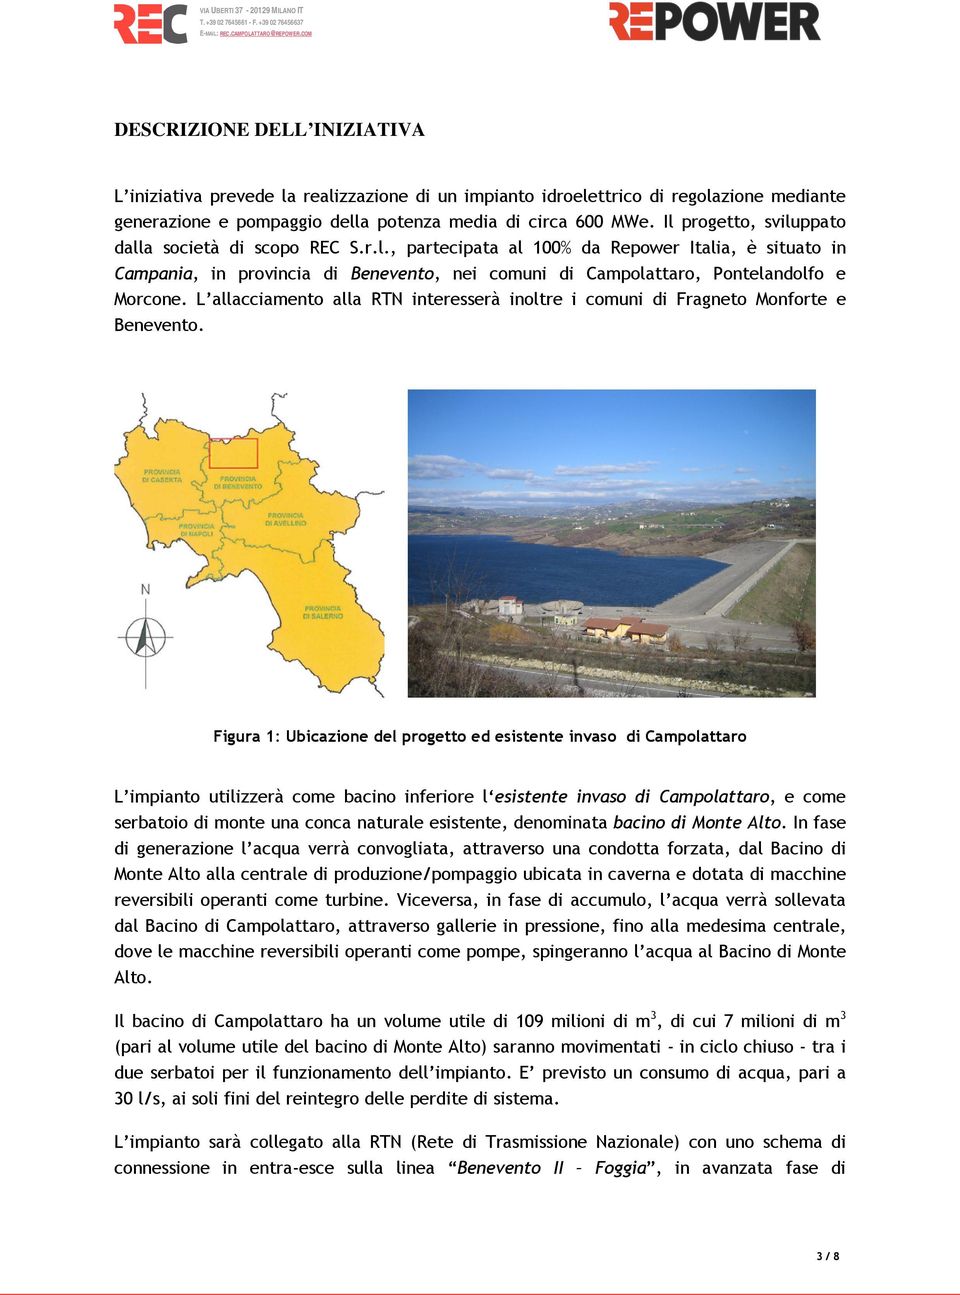 L allacciamento alla RTN interesserà inoltre i comuni di Fragneto Monforte e Benevento.